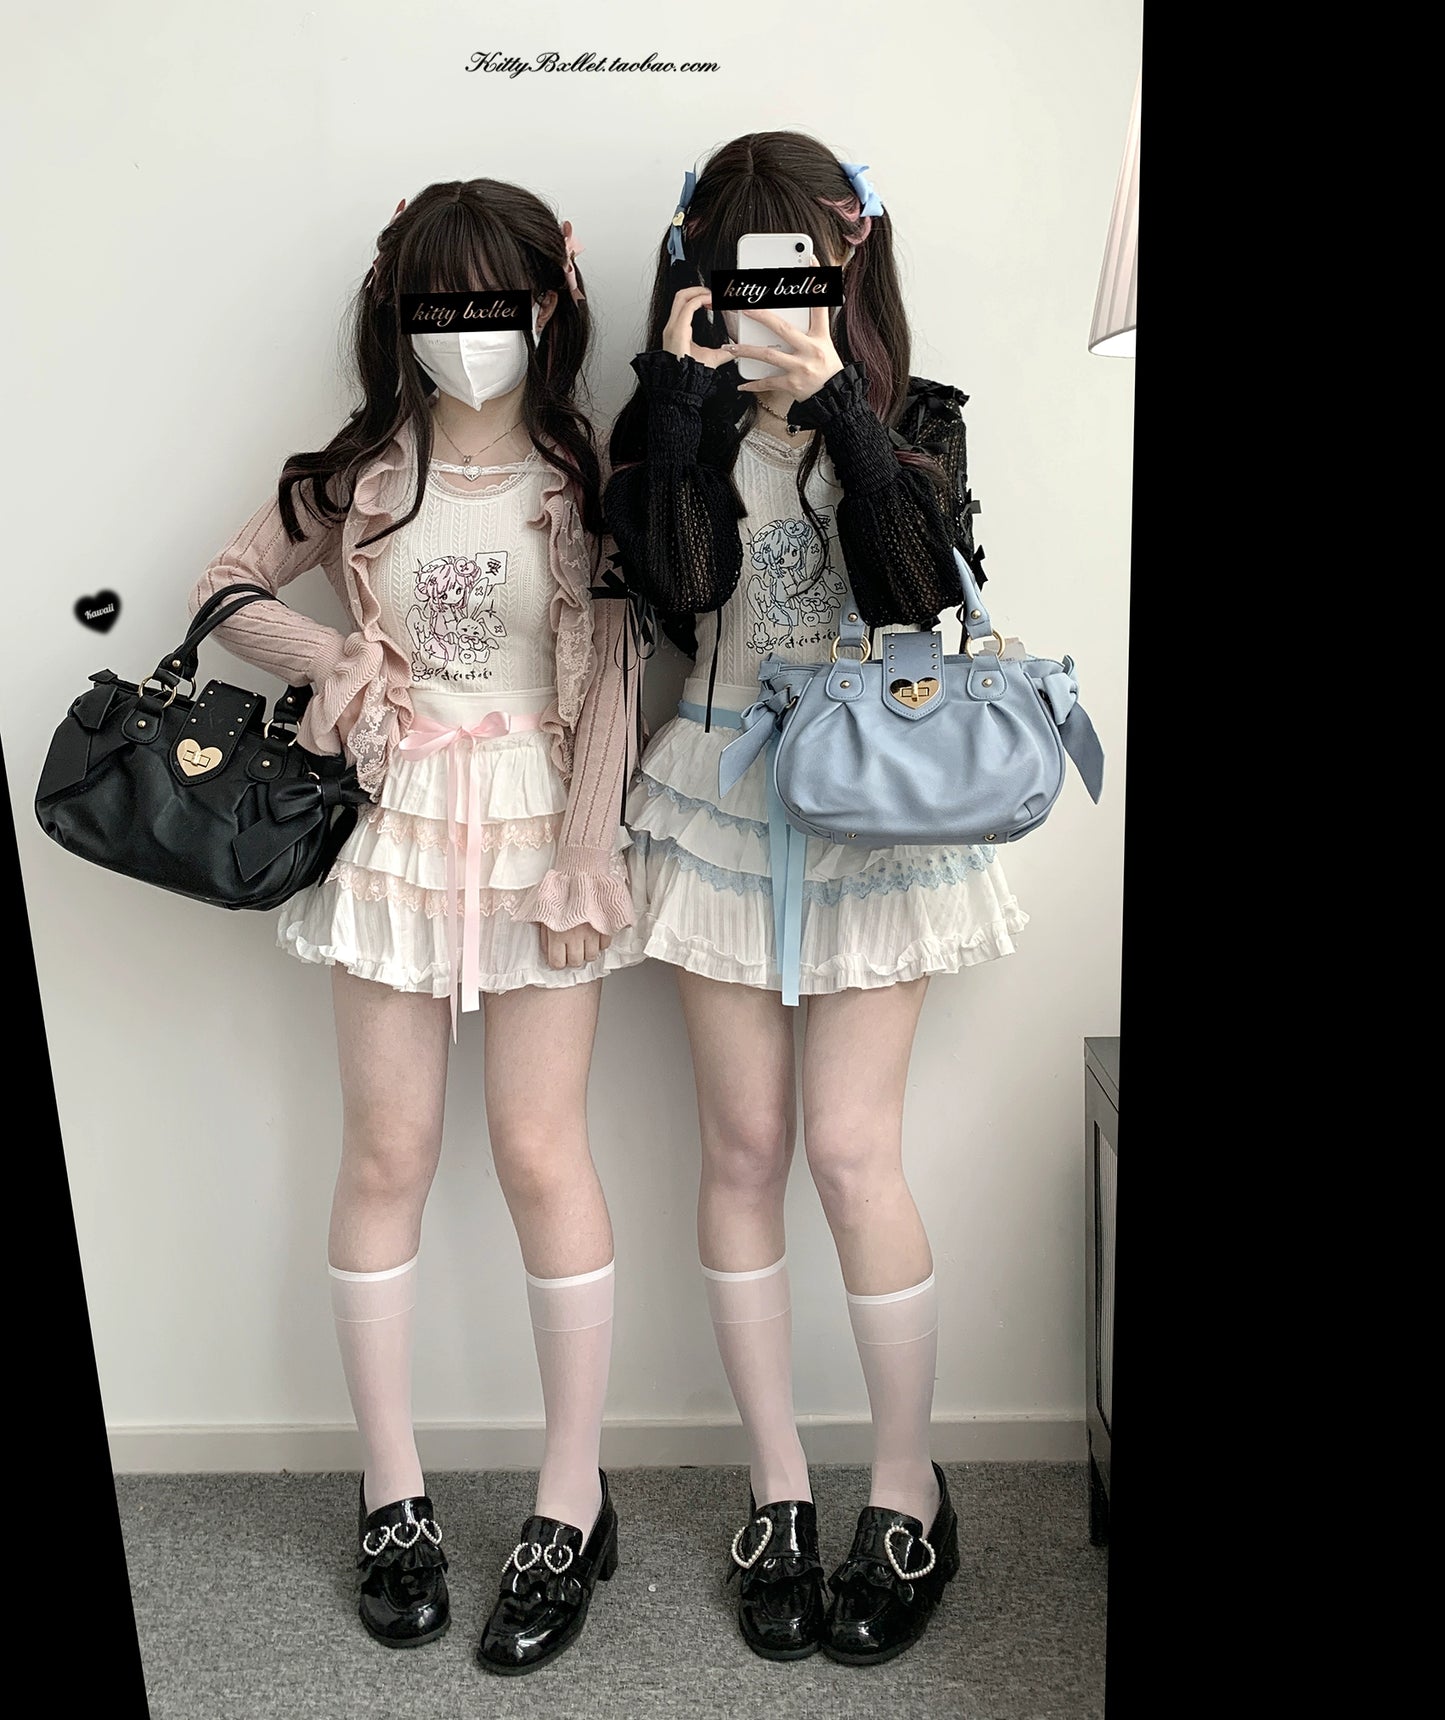 Ryousangata Skirt Lace Cake Skirt And Apron Set 36790:536194